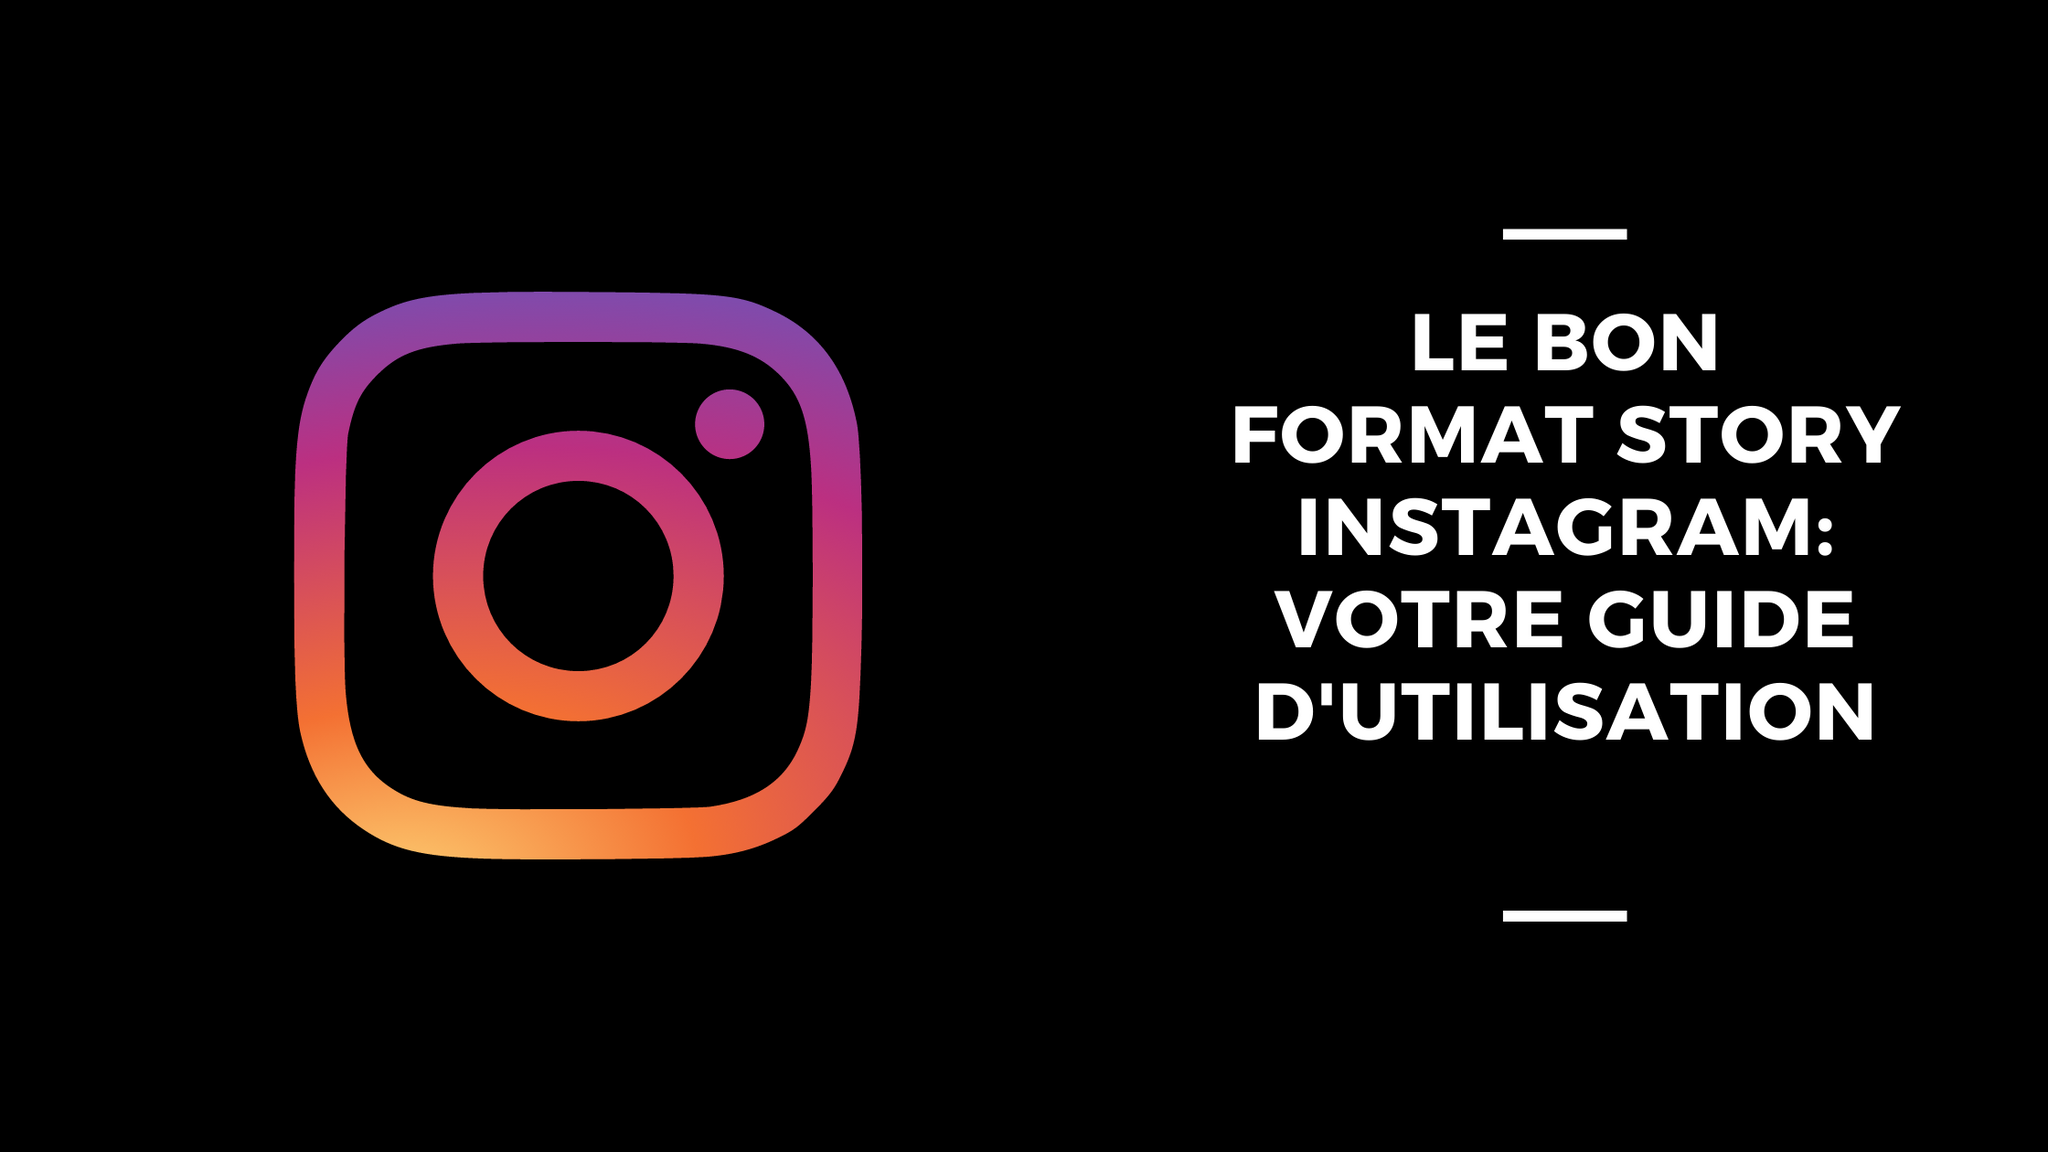 Le Bon Format Story Instagram: Votre Guide D'Utilisation